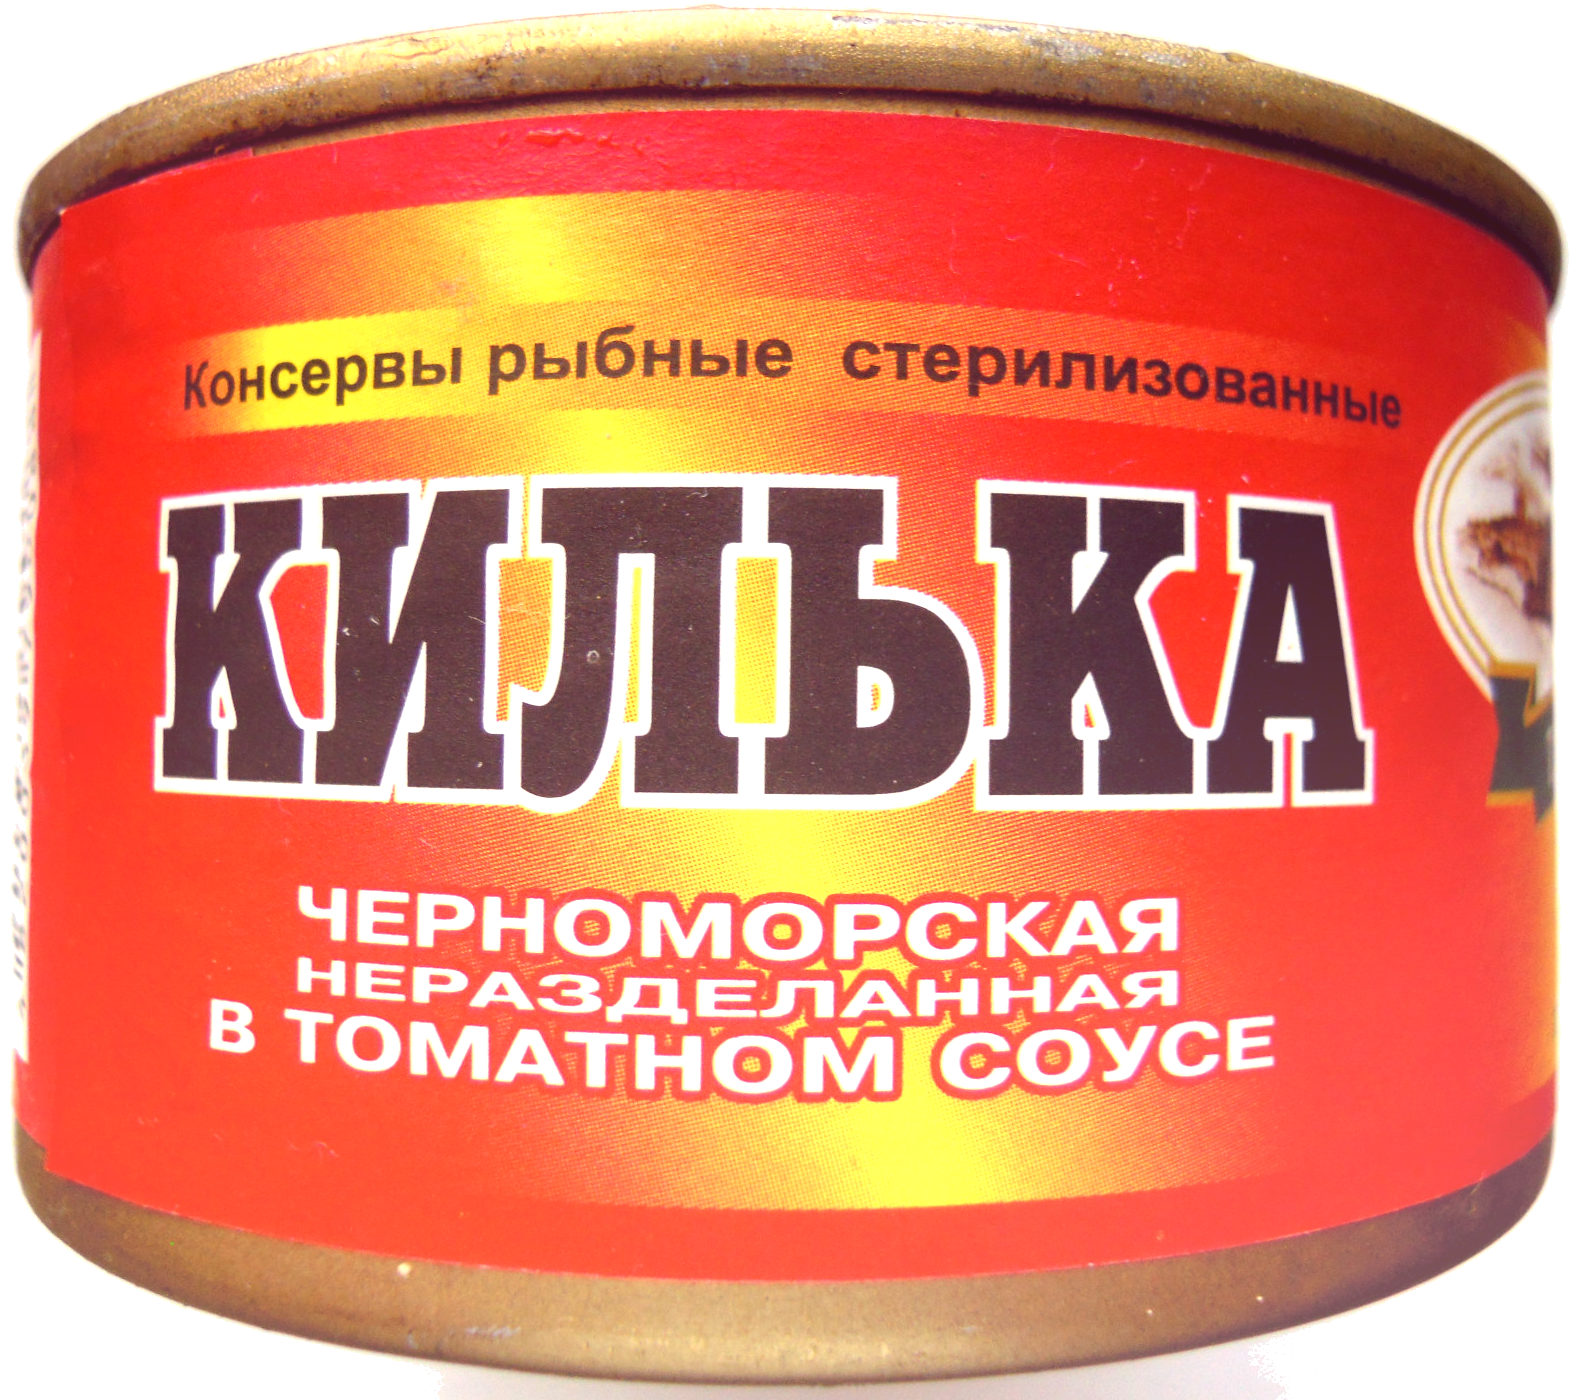 Килька черноморская неразделанная в томатном соусе - Product - ru